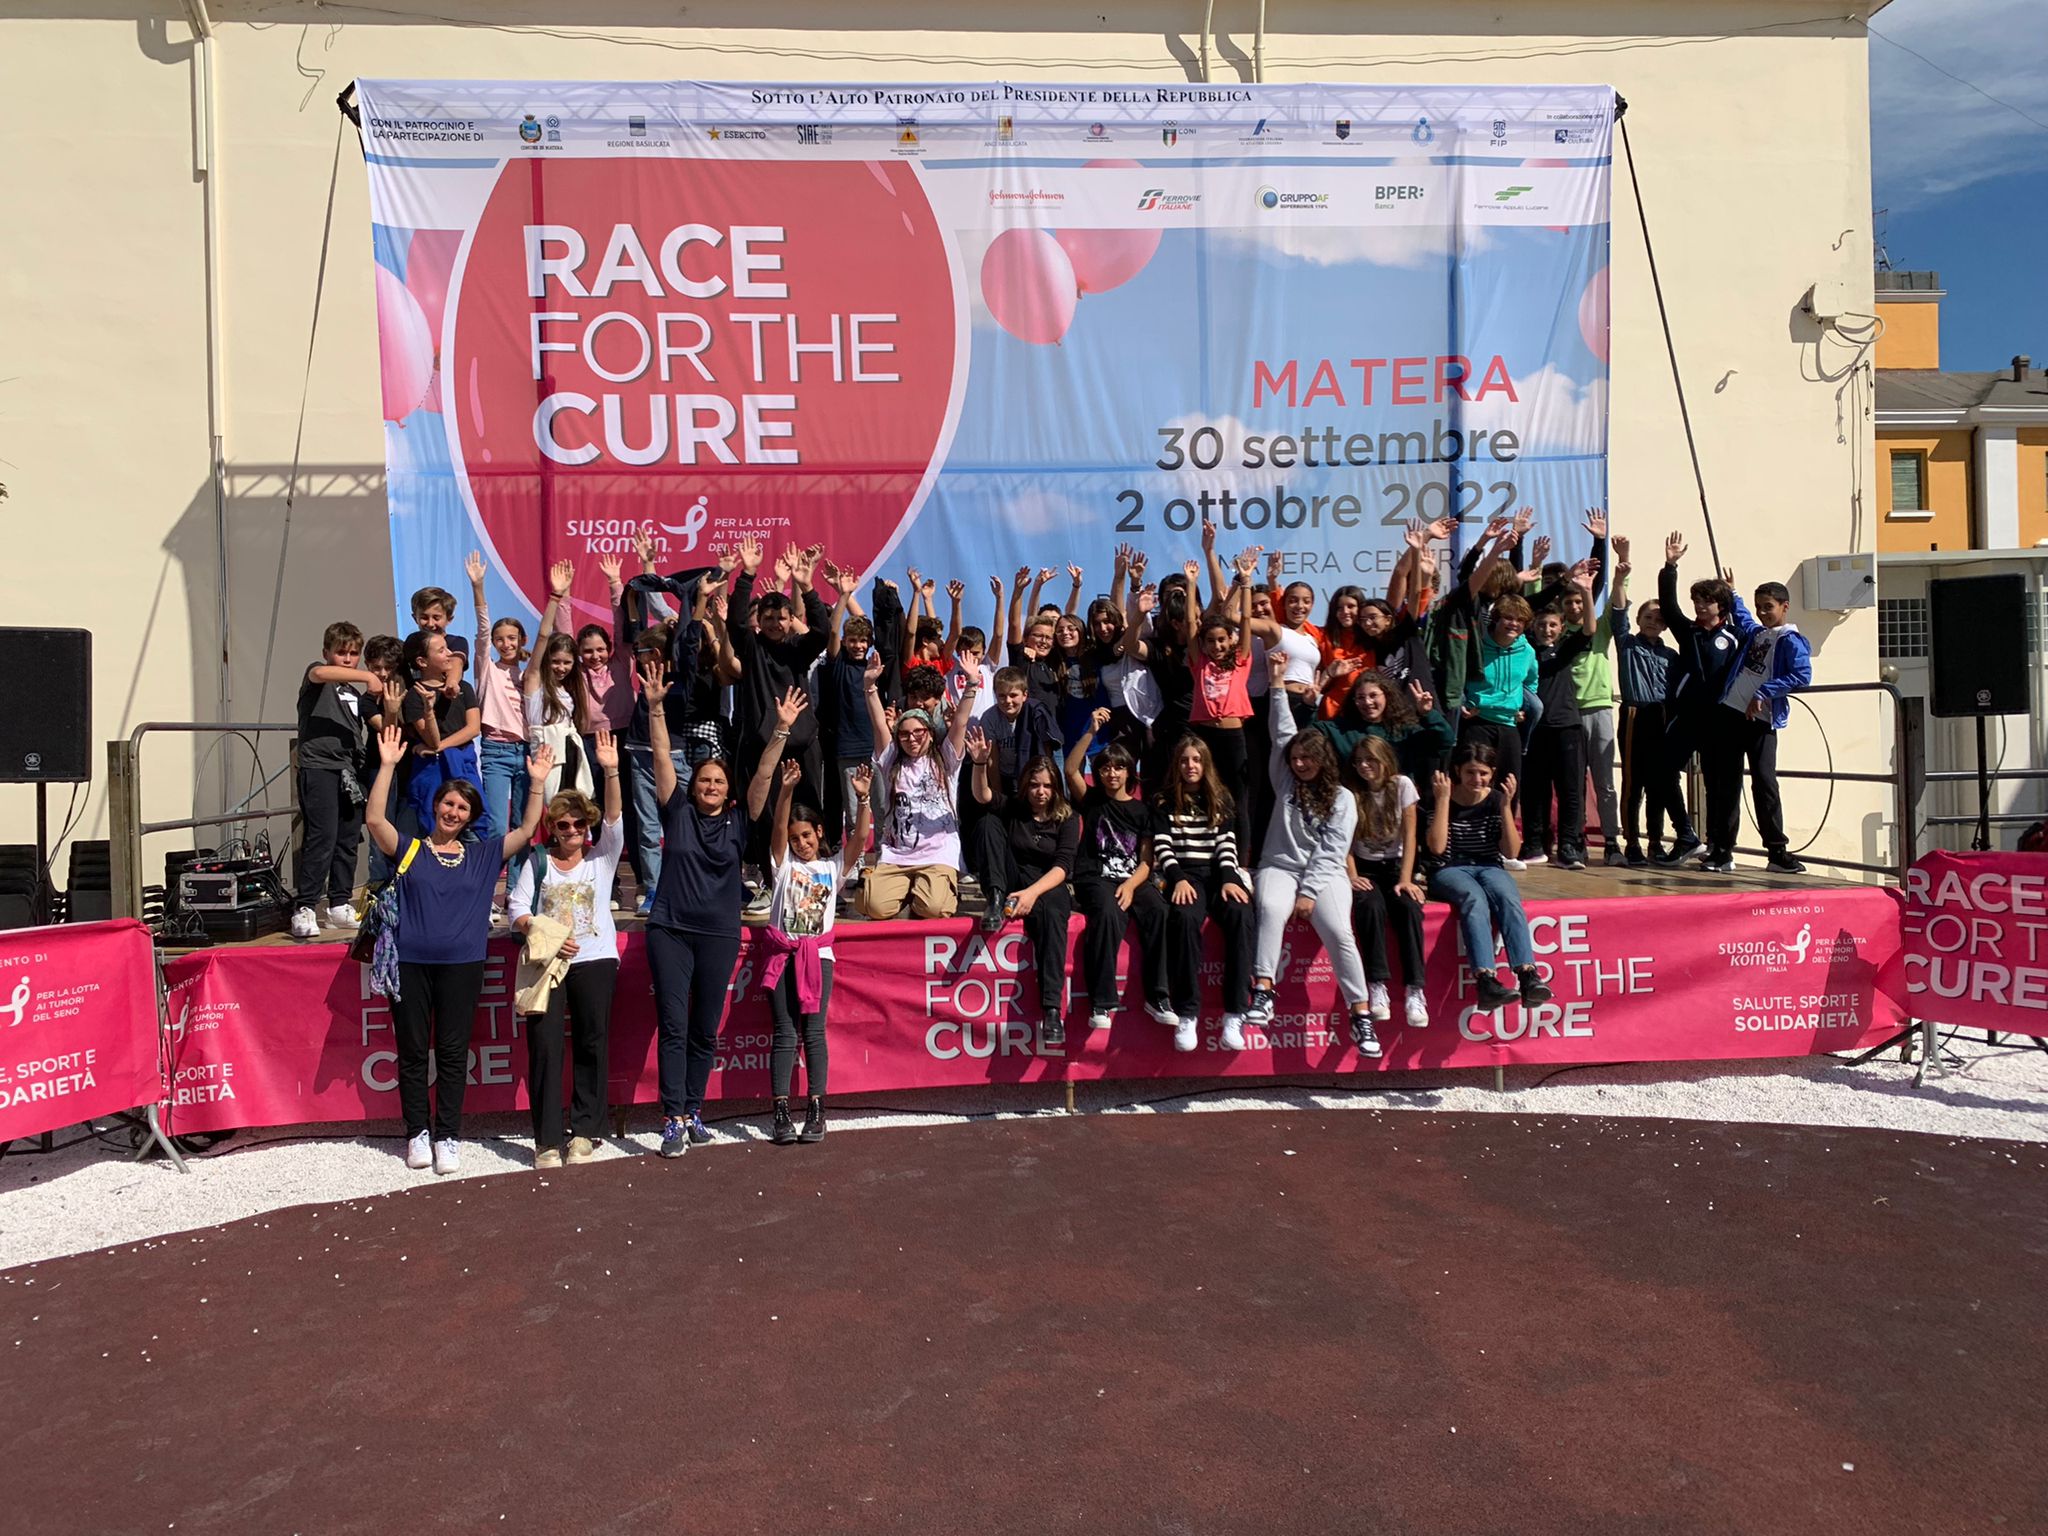 La Nicola Festa al Villaggio Race for the Cure 2022 di Matera